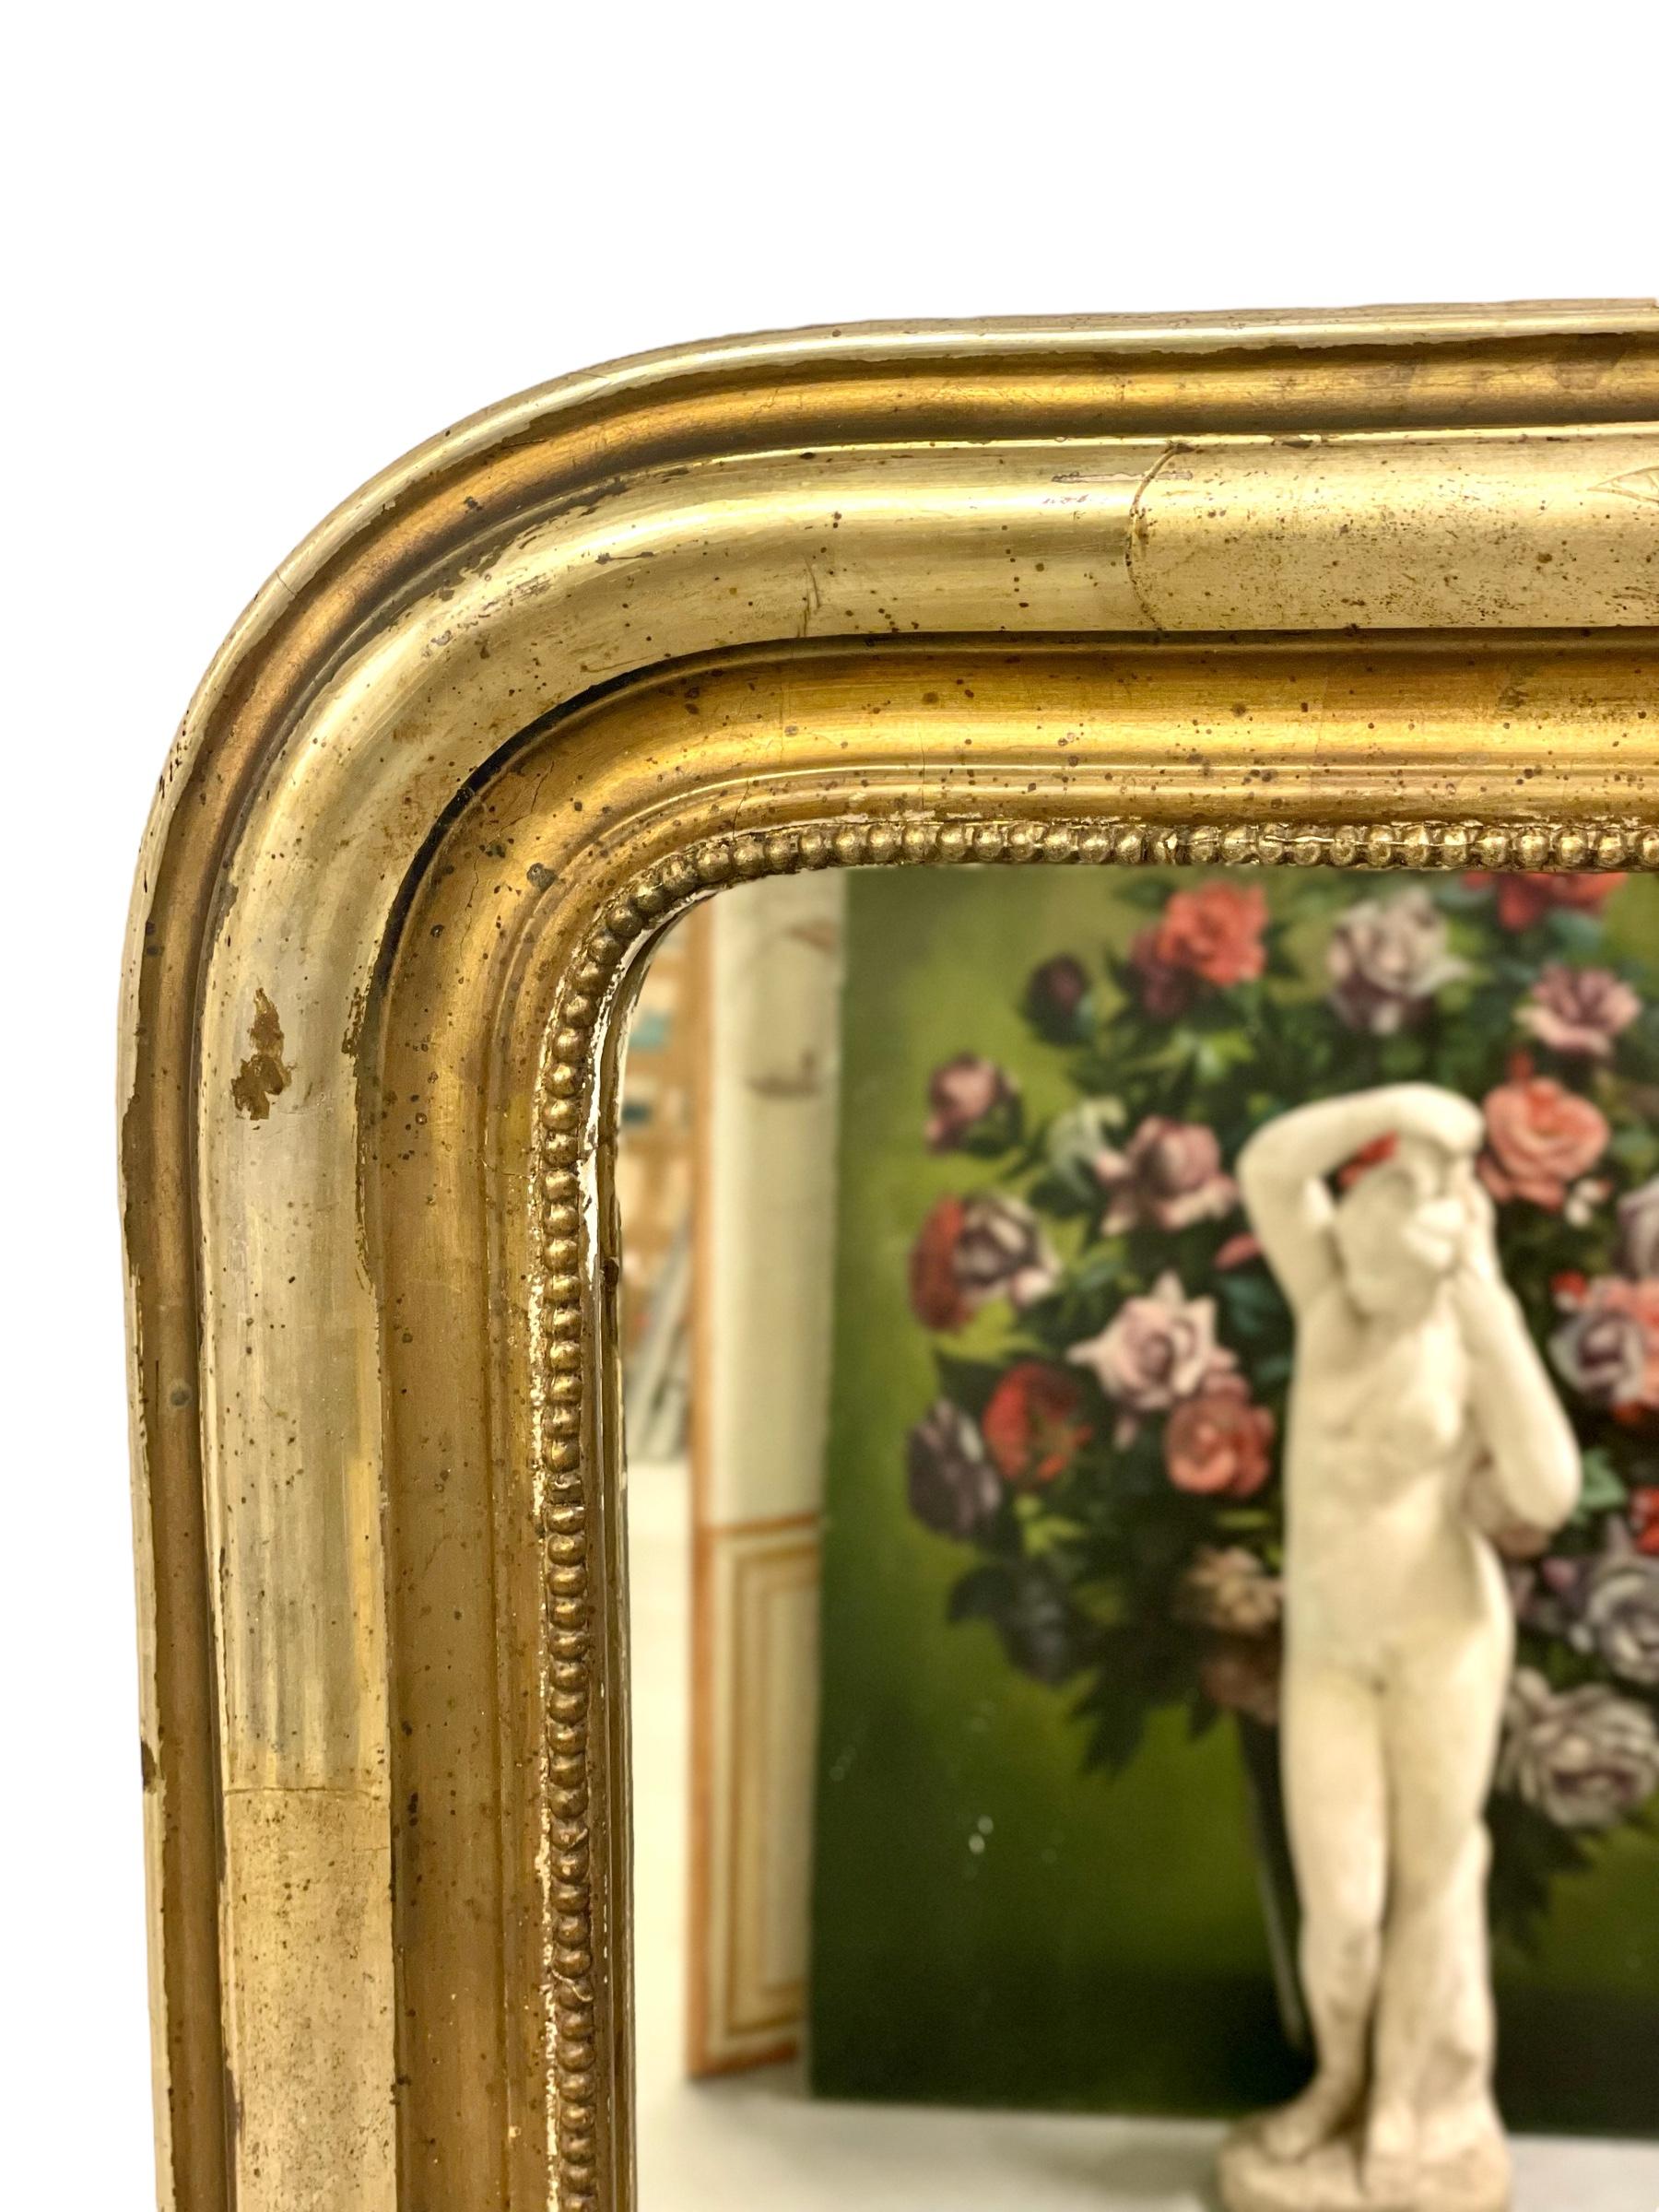 Ein glänzender Spiegel aus vergoldetem Holz im Louis-Philippe-Stil, dessen brünierter Rahmen die für diese Epoche typischen einfachen, klaren Linien und geschwungenen oberen Ecken aufweist. Die ursprüngliche Vergoldung des geschnitzten und geformten